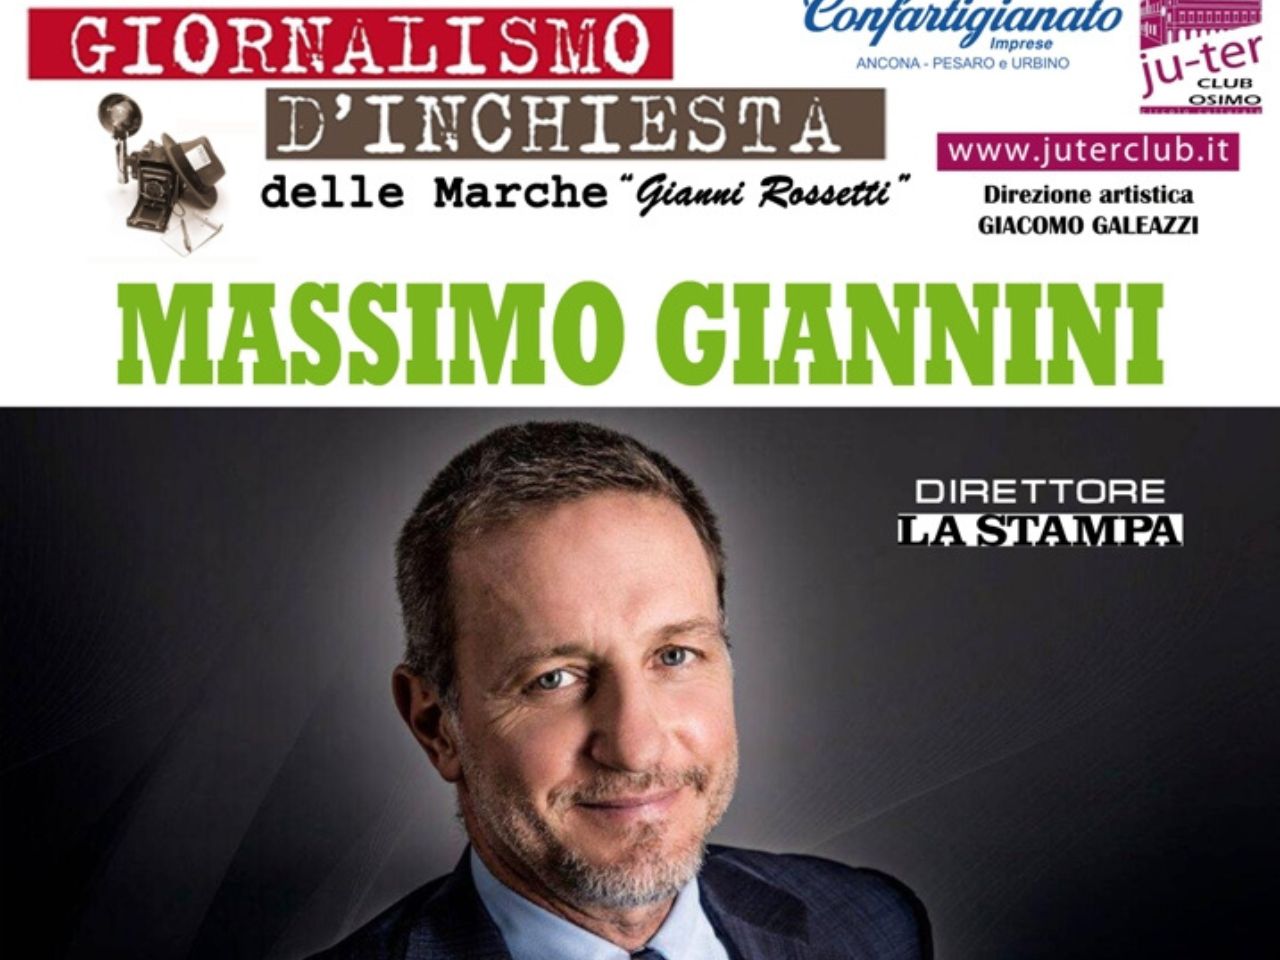 Il Direttore ‘La Stampa’ Massimo Giannini sbarca ad Ancona il 21 ottobre